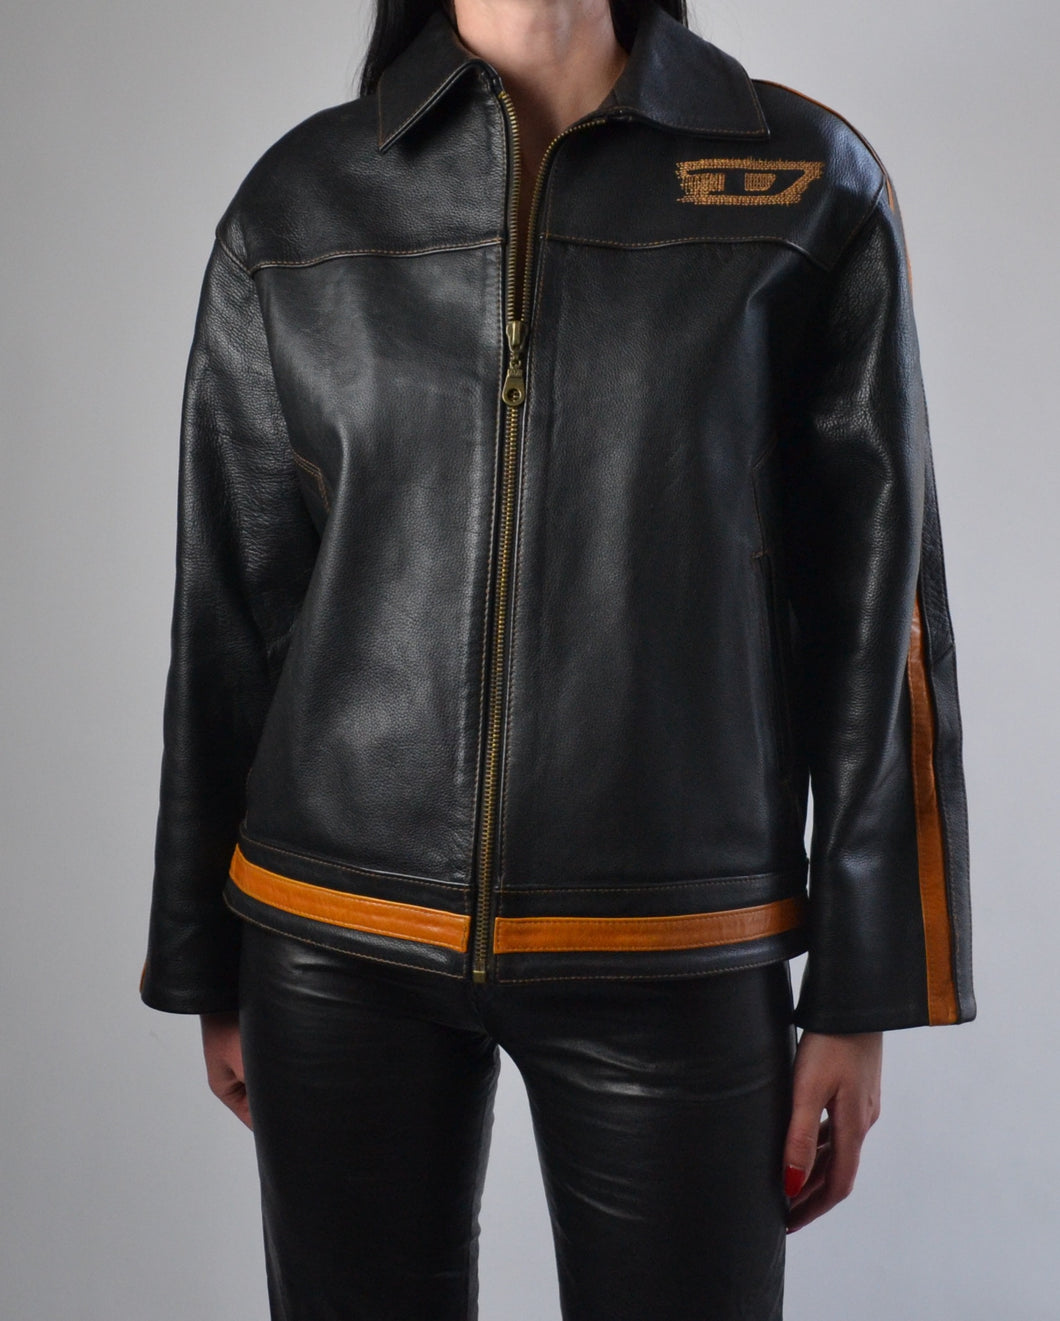 Diesel Black & Orange Leather Jacket